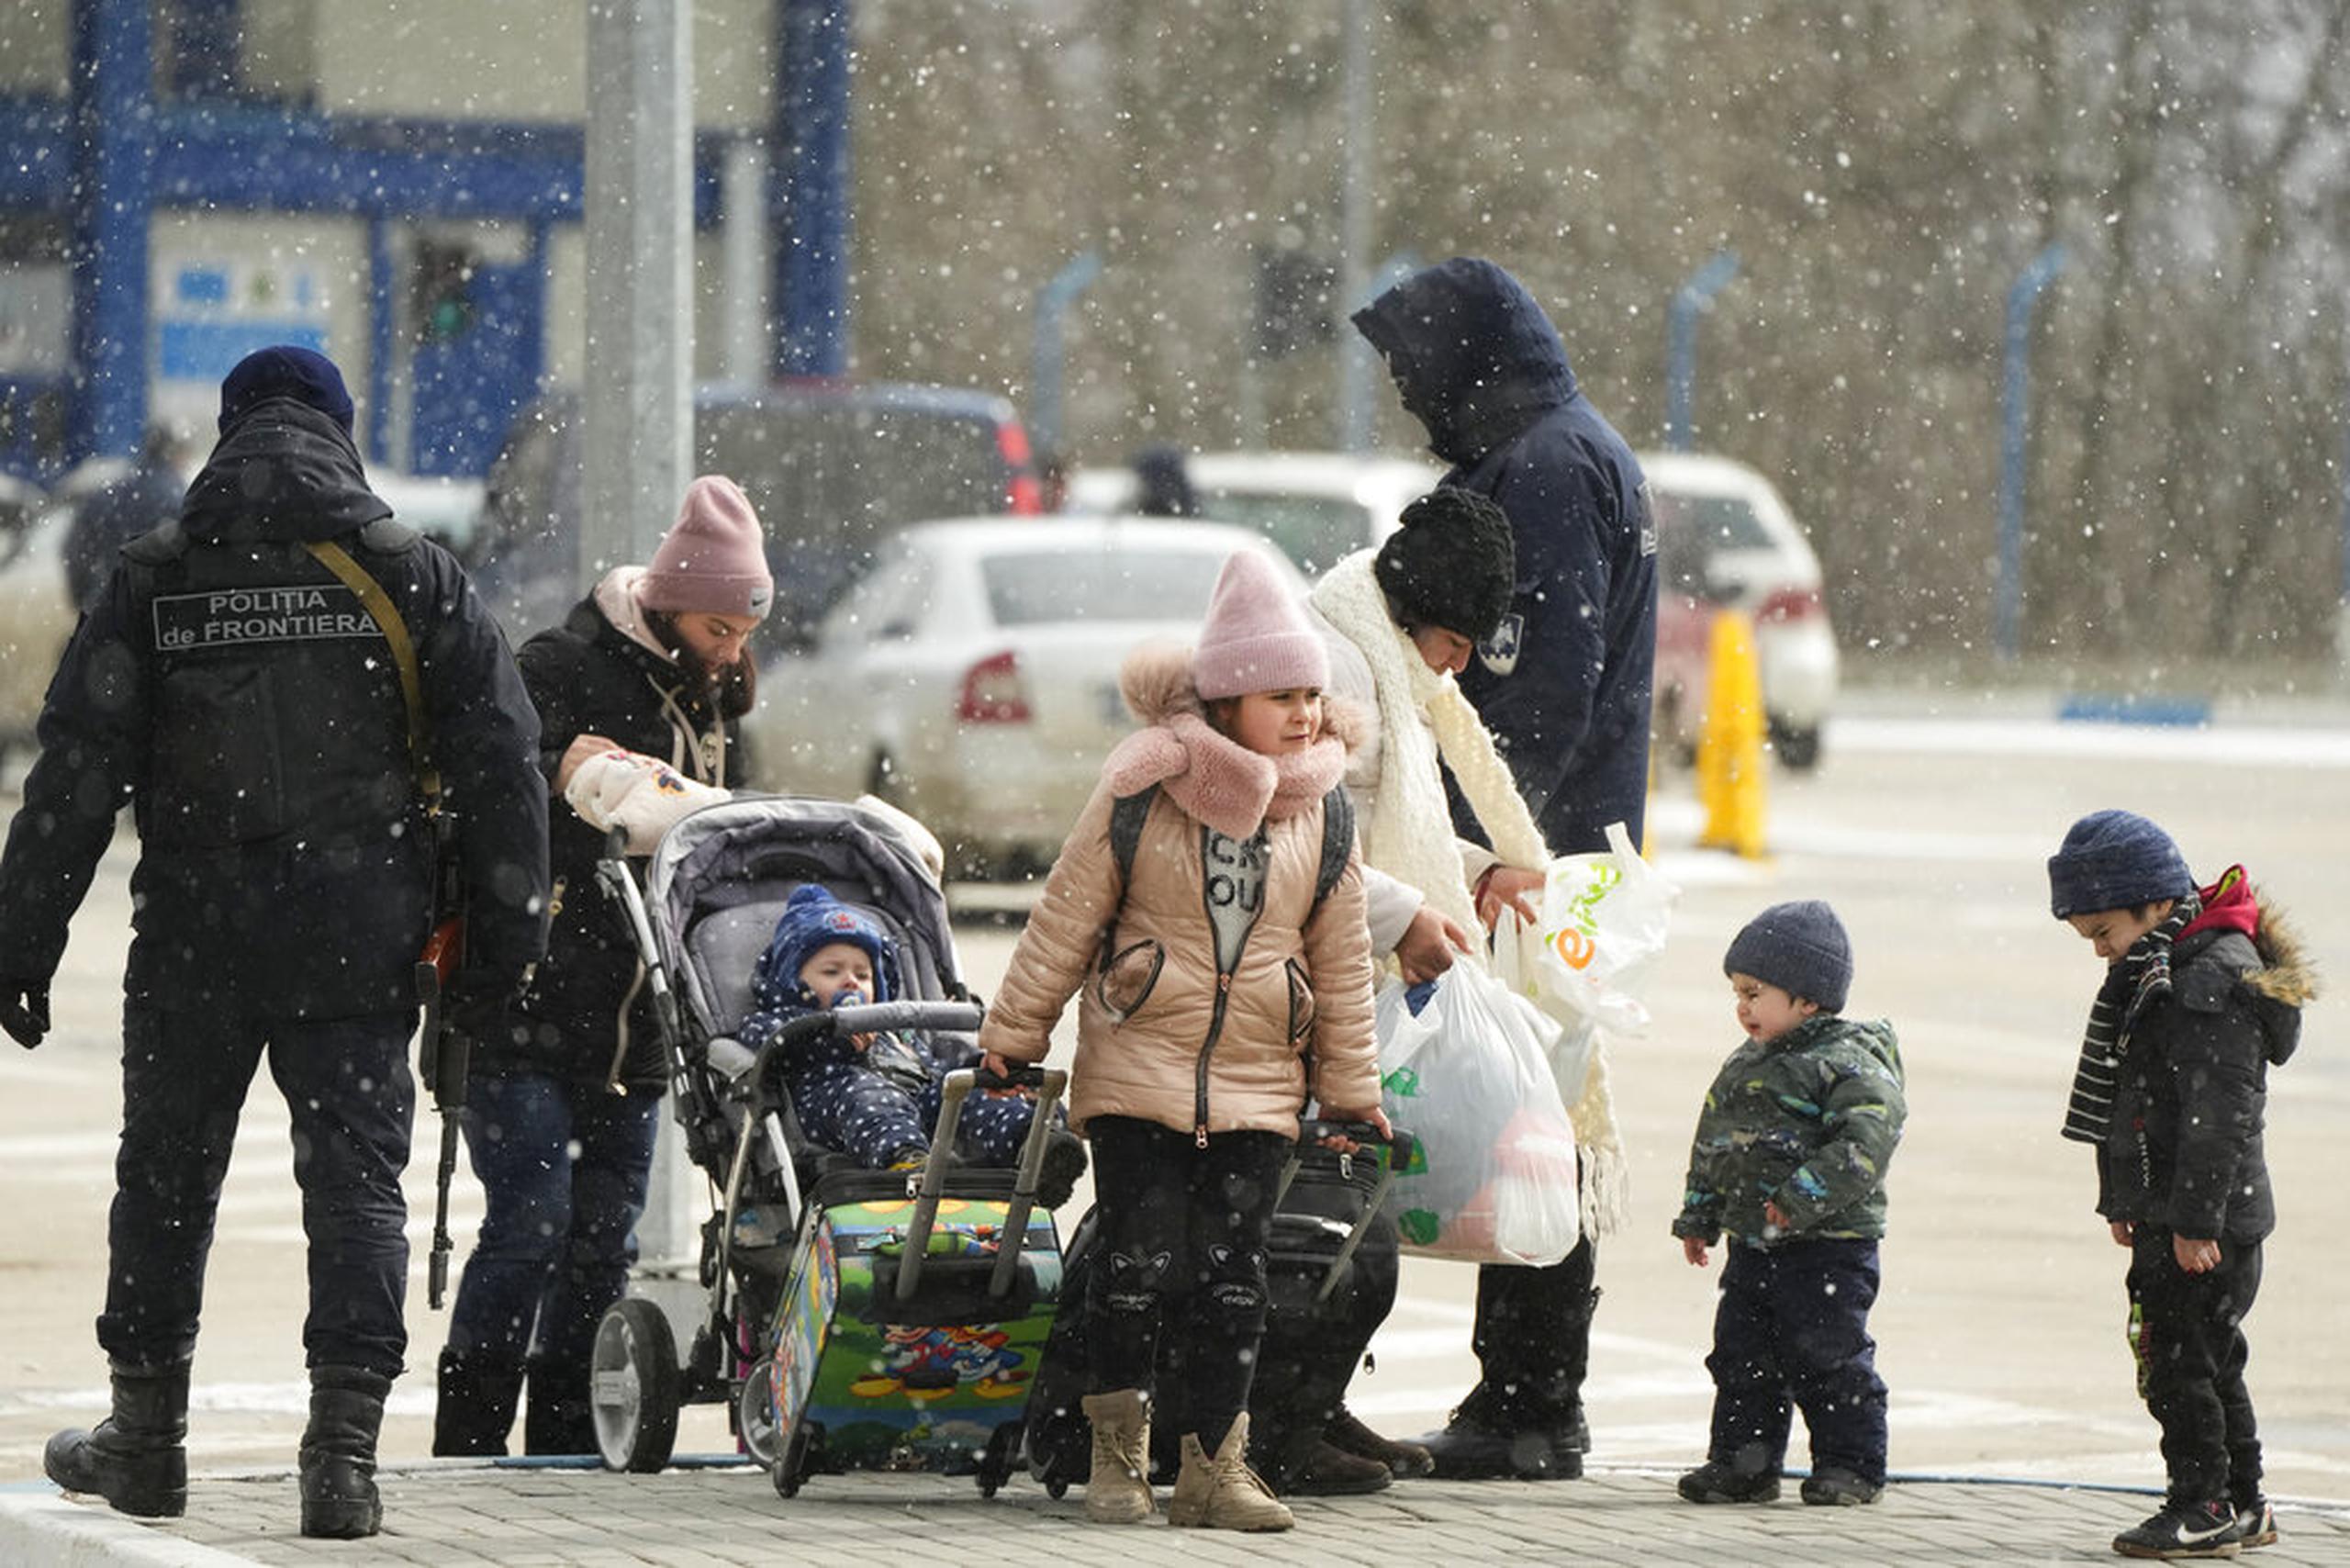 Guardias fronterizos de Moldavia revisan a refugiados que huyen de la guerra desde la vecina Ucrania, en el cruce fronterizo de Palanca, Moldavia, el 11 de marzo de 2022.